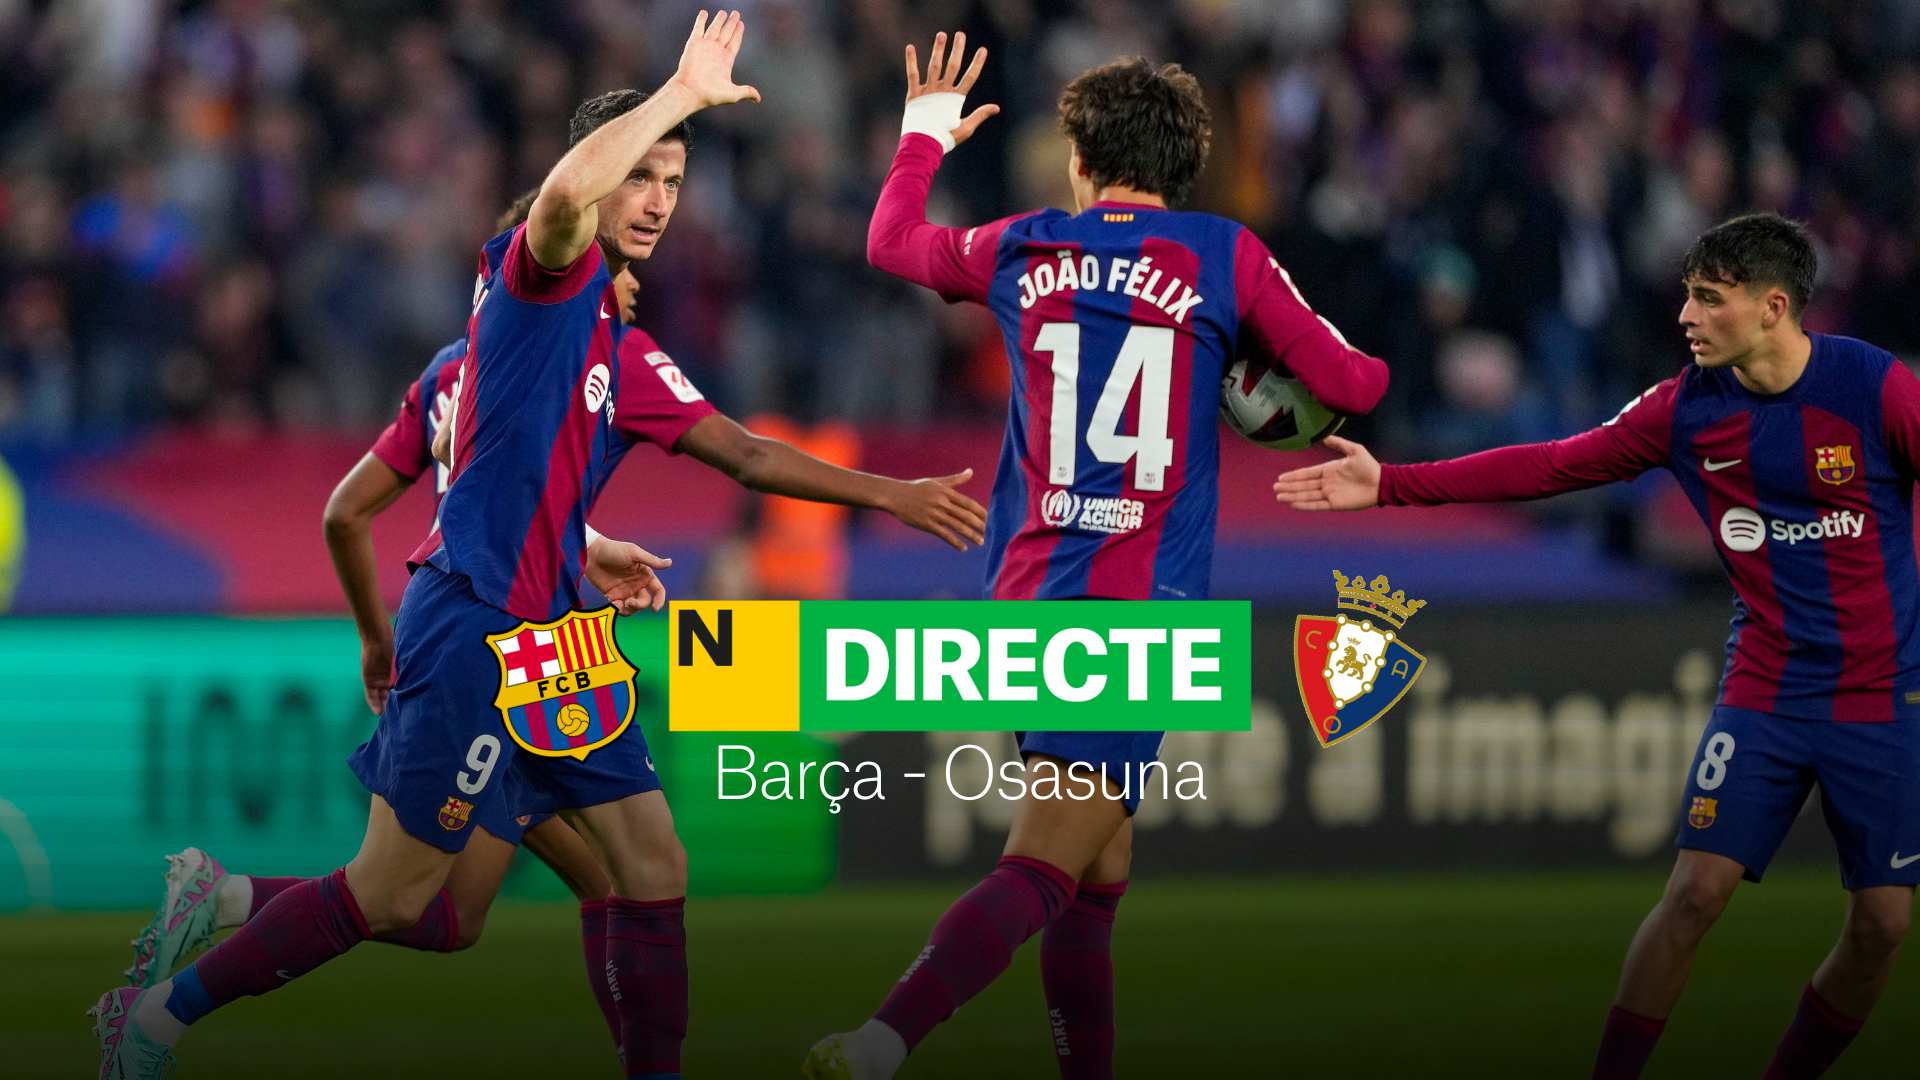 Barça - Osasuna de LaLiga EA Sports, DIRECTE | Resultat, resum i gols